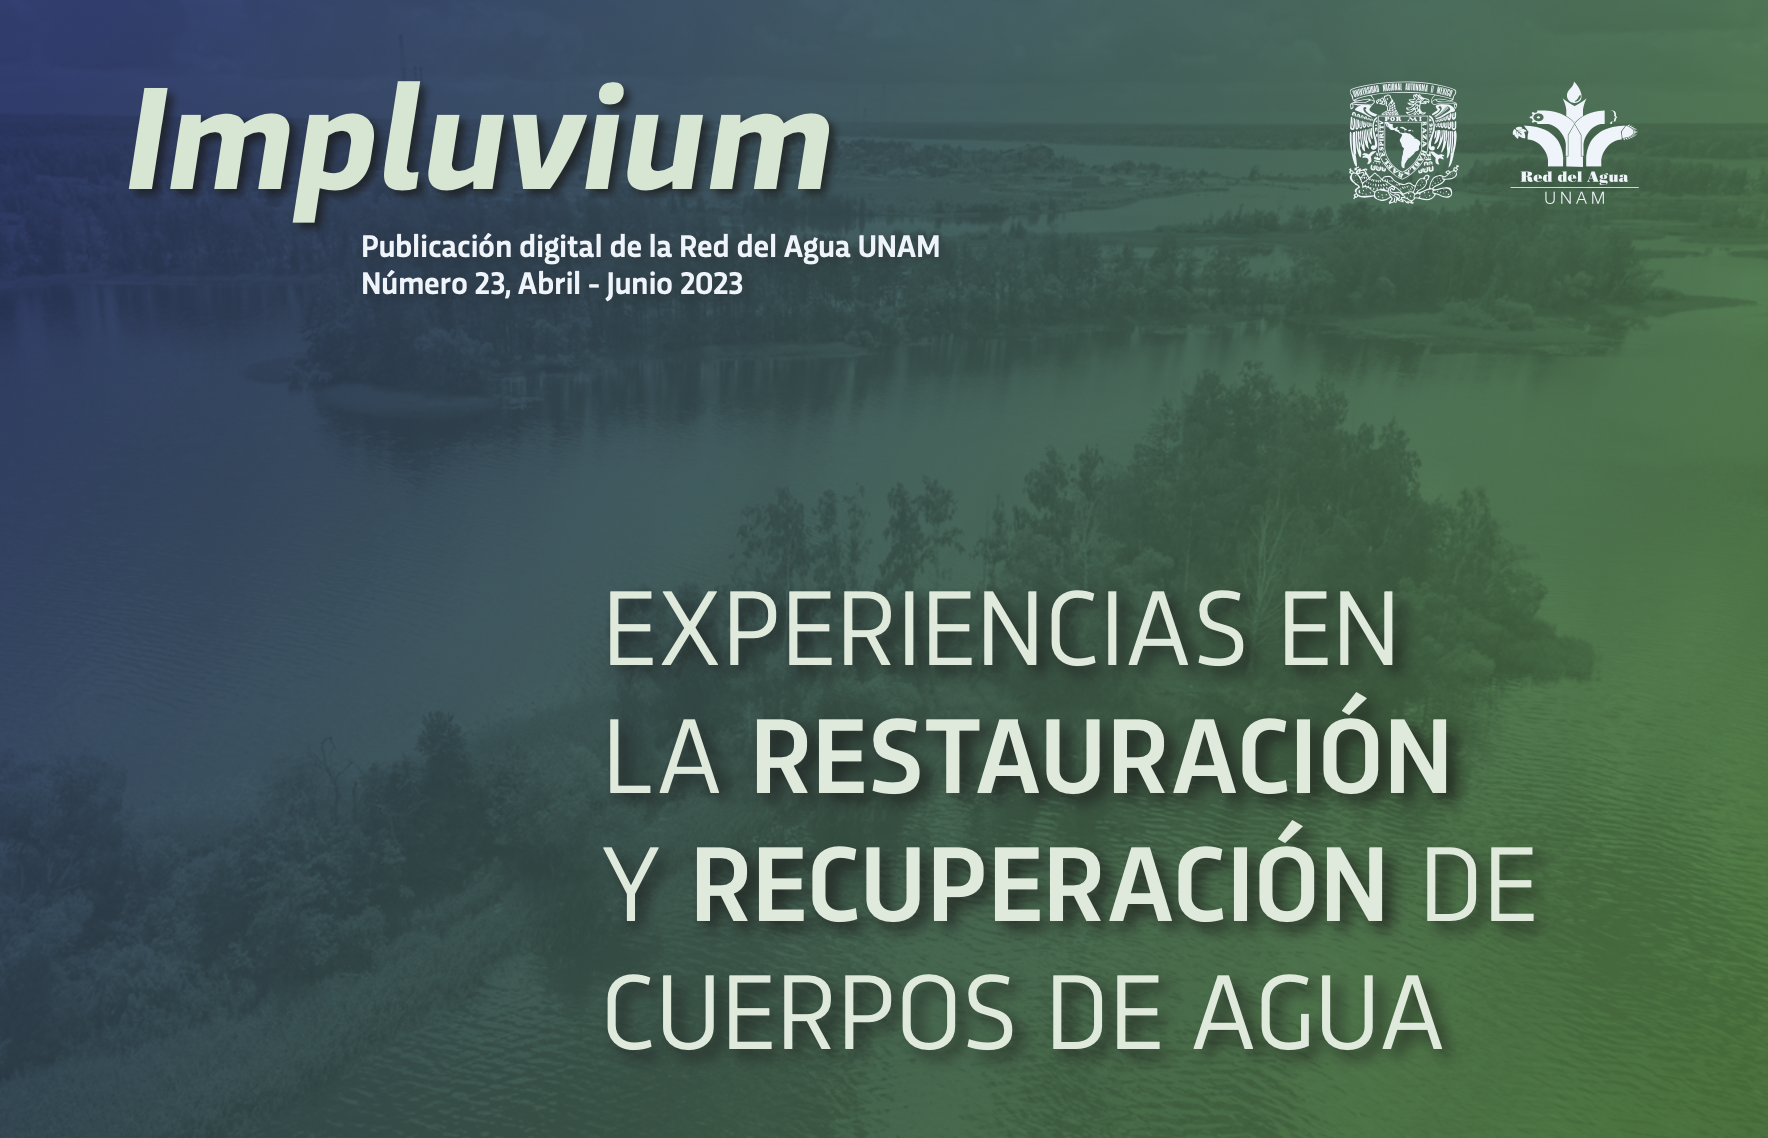 Experiencias en la restauración y recuperación de cuerpos de agua (Red del Agua UNAM)